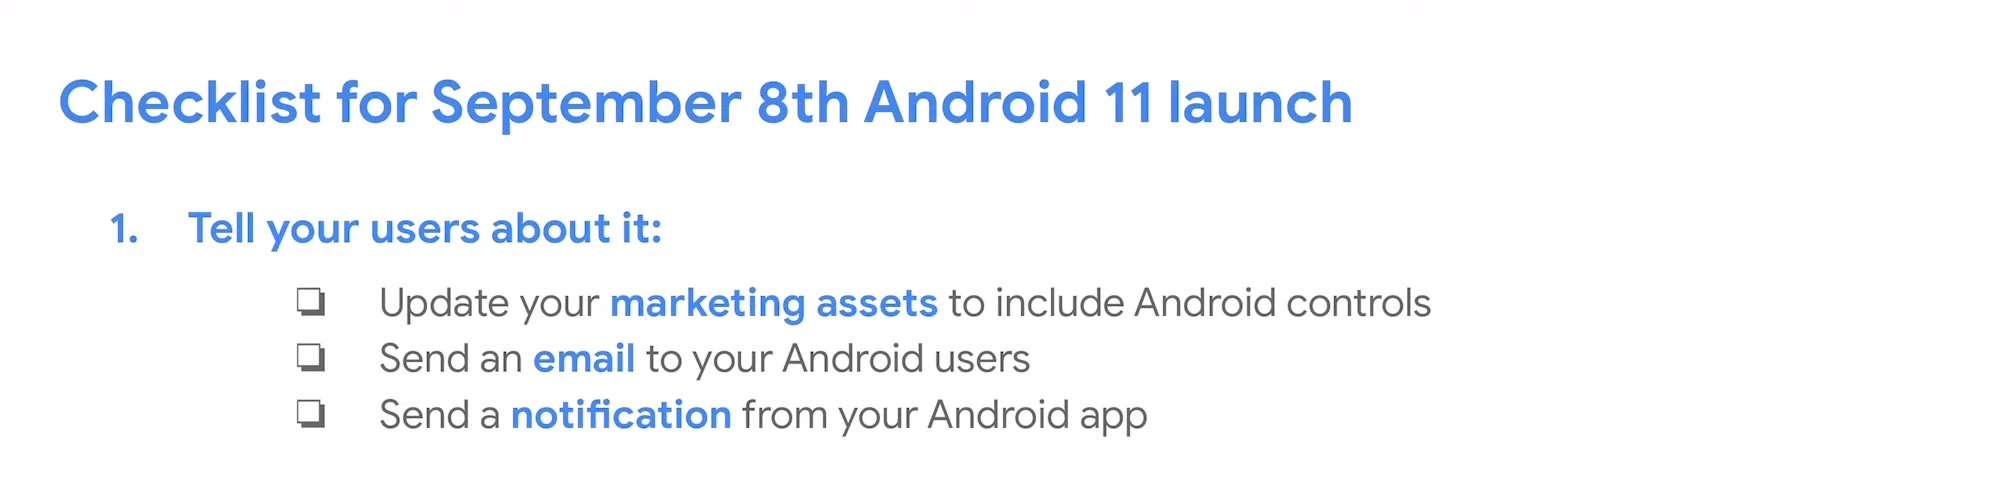 Android 11 - zakładana data premiery